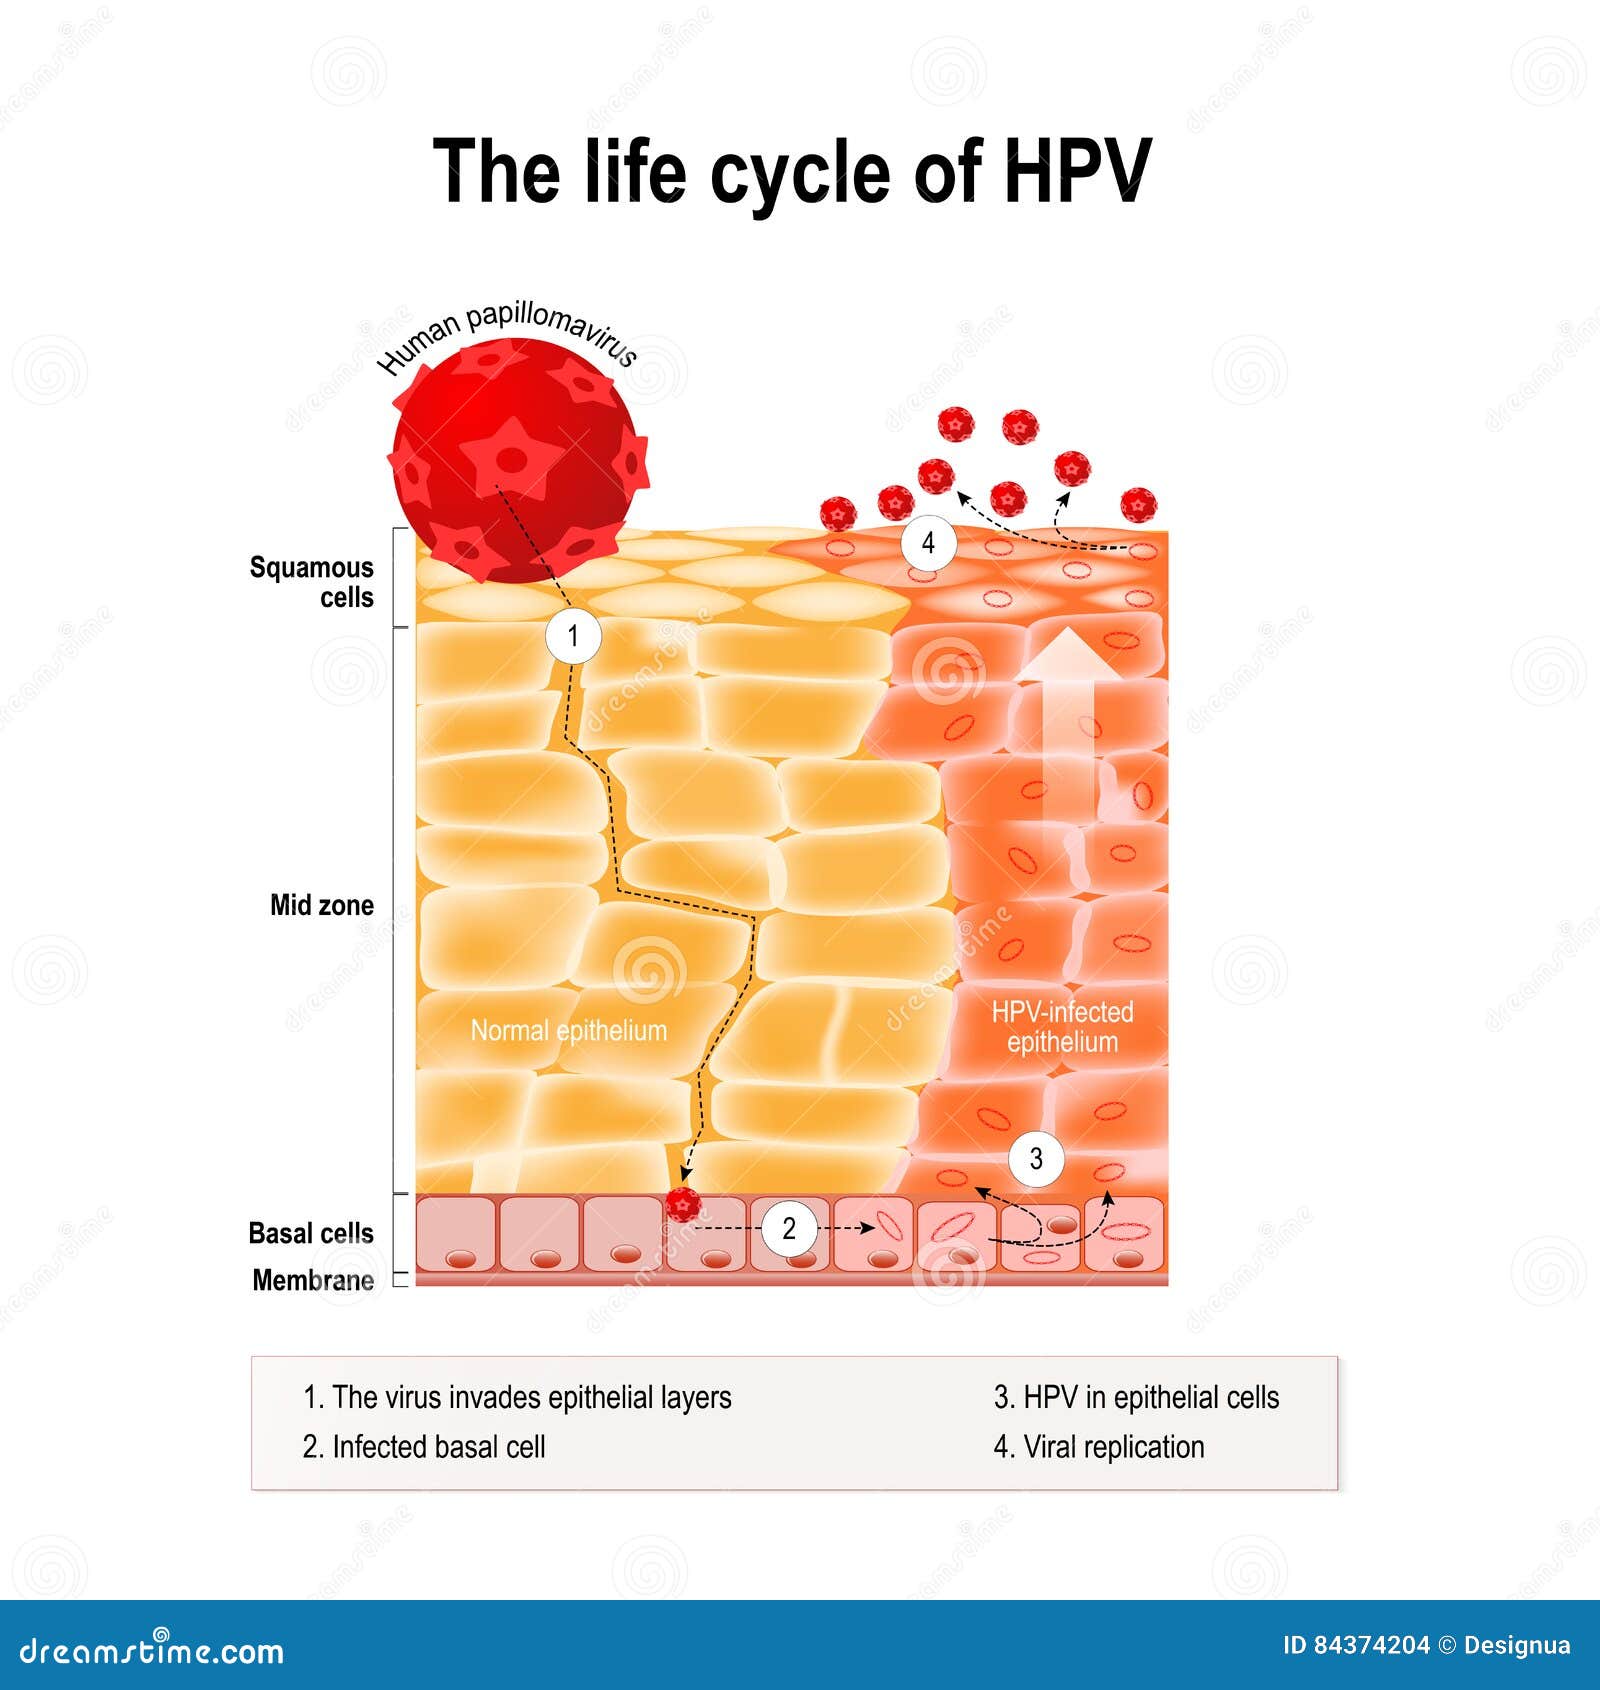 Papillomavirus life cycle, - Papillomavirus life cycle